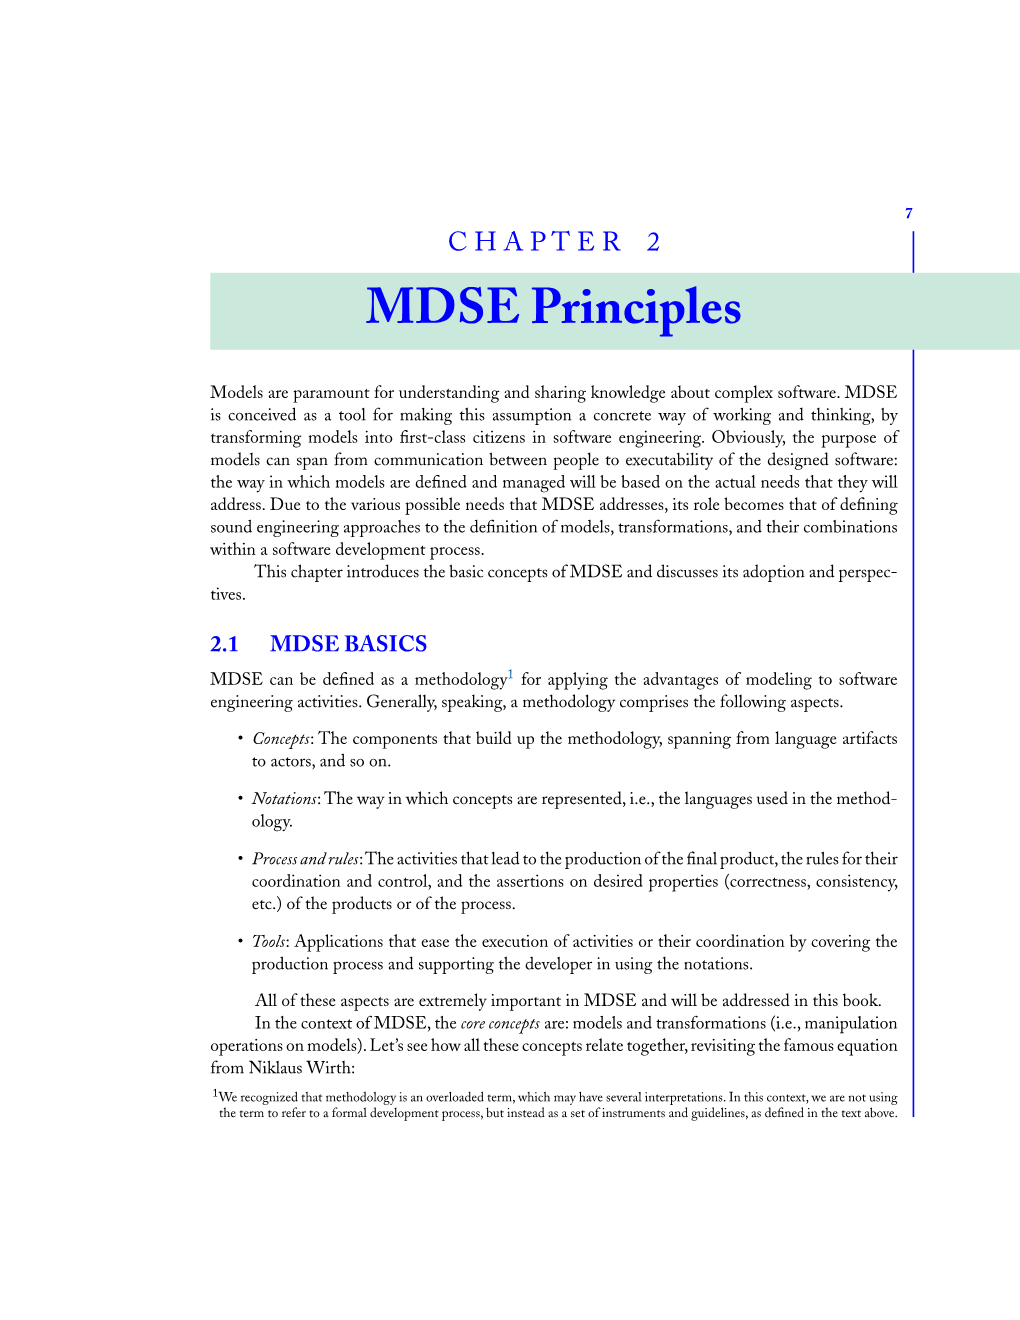 CHAPTER 2 MDSE Principles